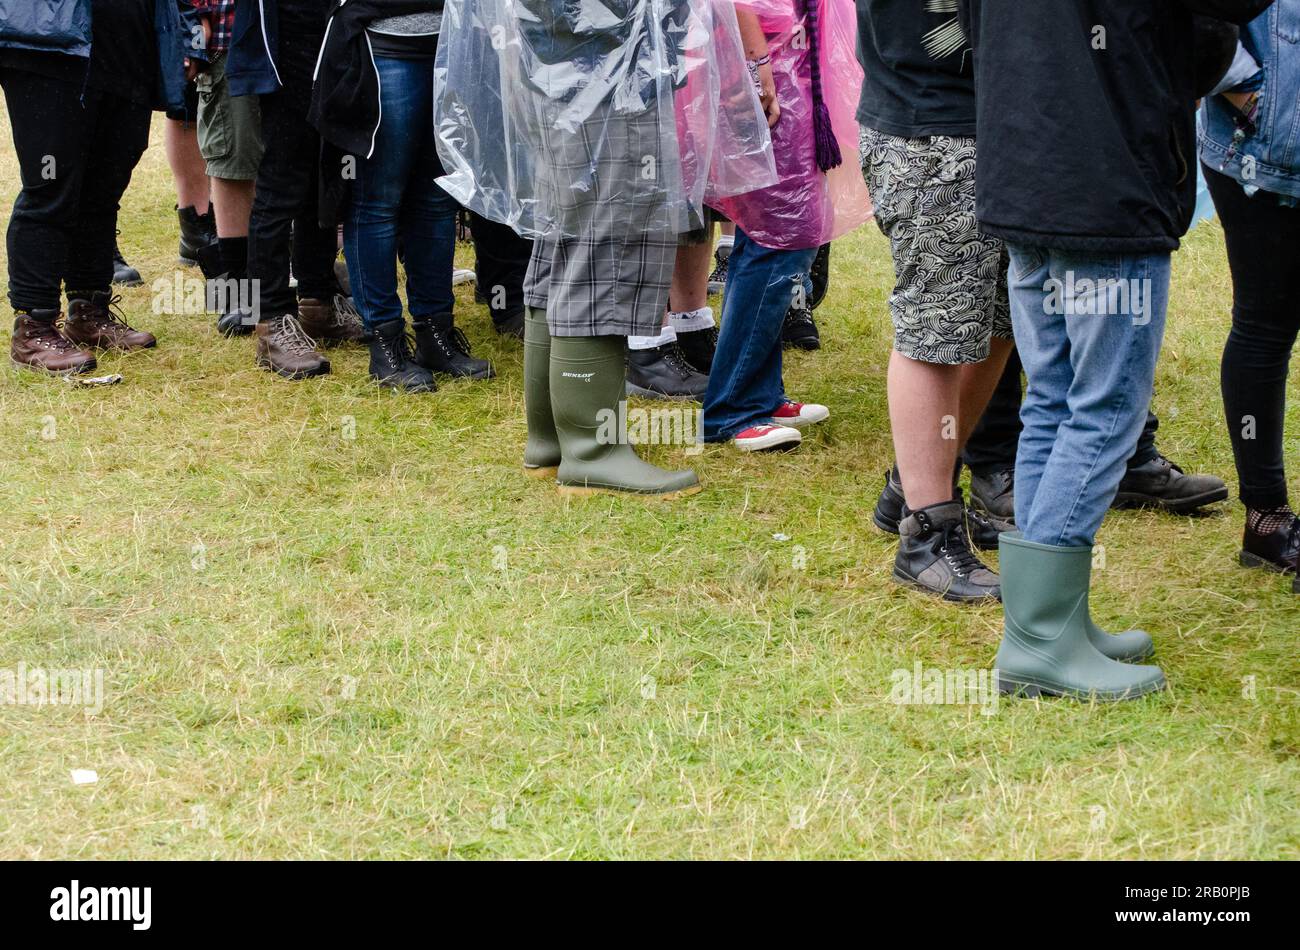 Les fans de rock font la queue au festival de rock Sonisphere à Knebworth, Hertfordshire, Royaume-Uni. Événement extérieur par temps humide. L'été humide Banque D'Images